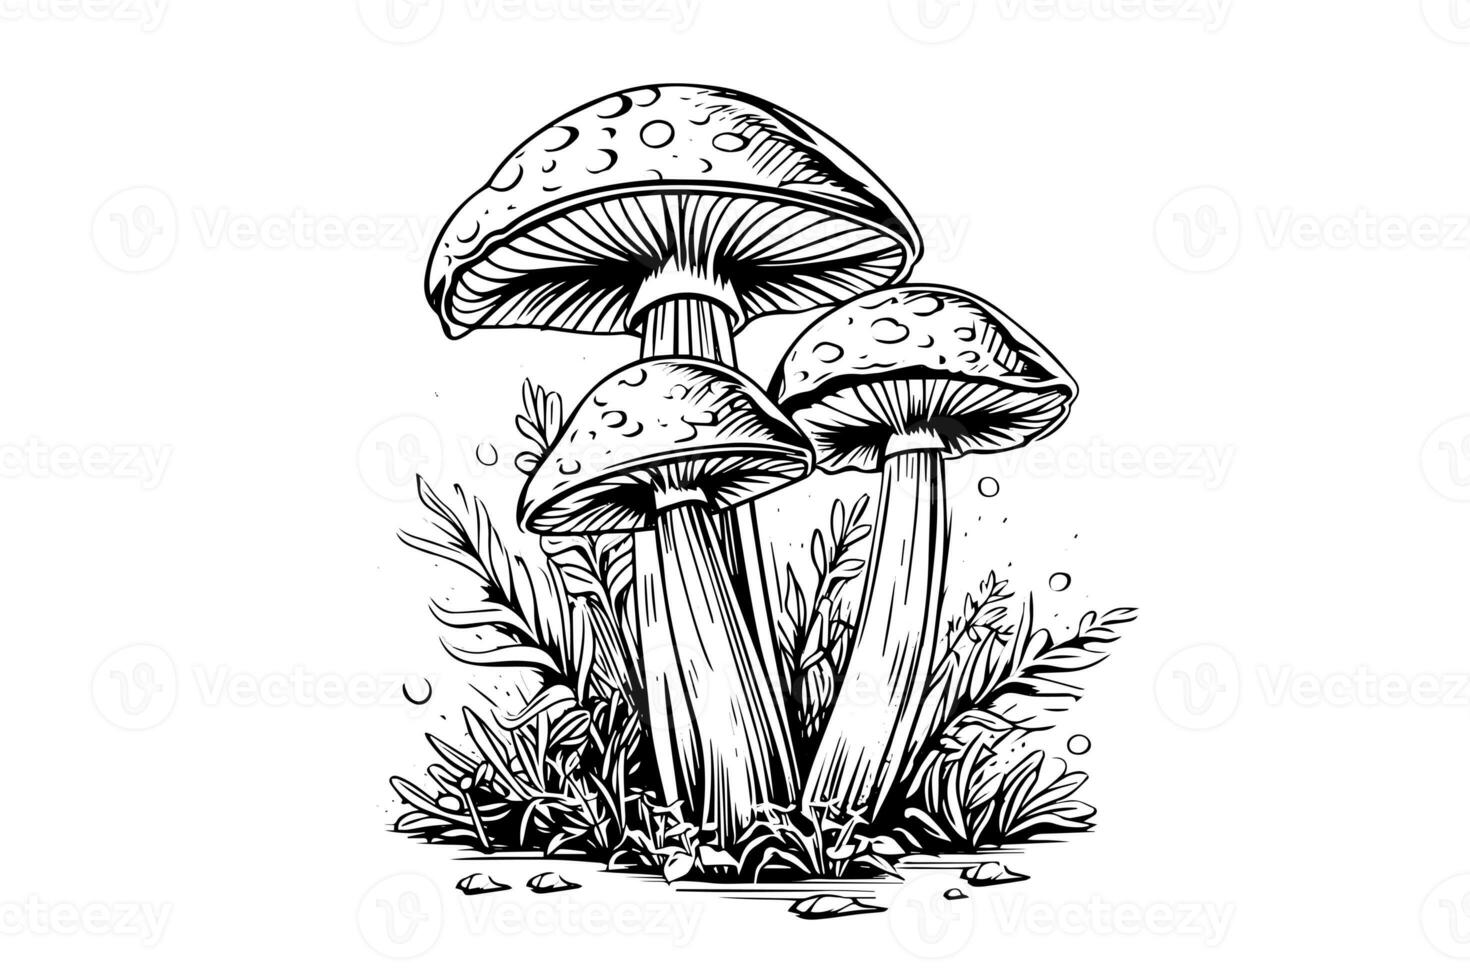 mouche agaric ou amanite champignons groupe croissance dans herbe gravure style. vecteur illustration. photo